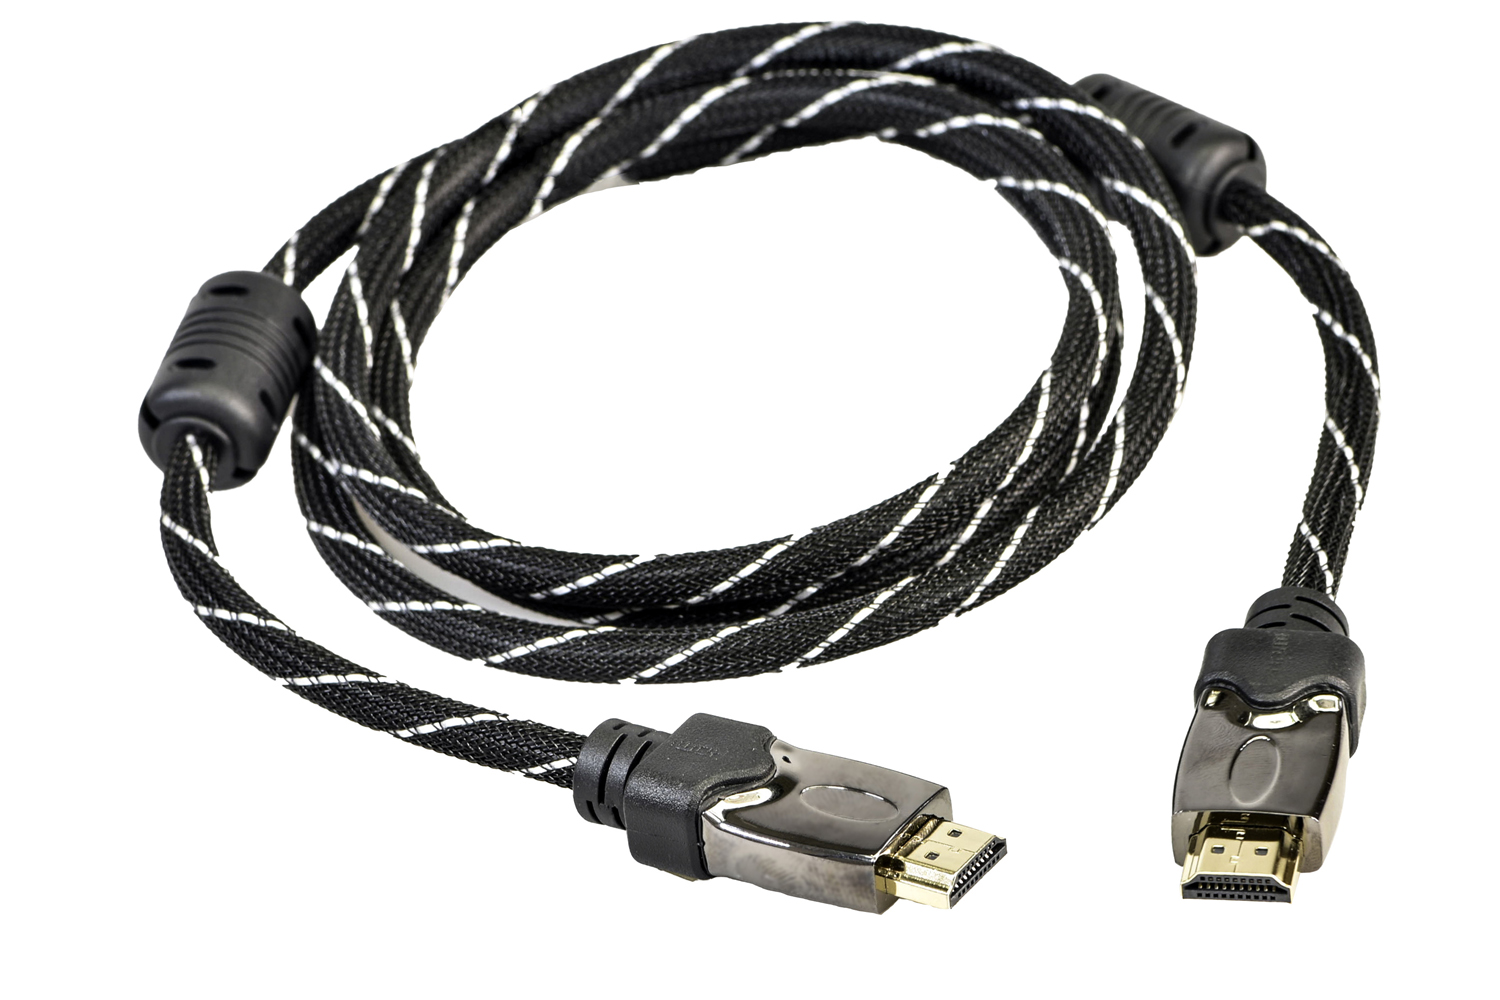 19425, Cable HDMI / HDMI, 1.5m, Black